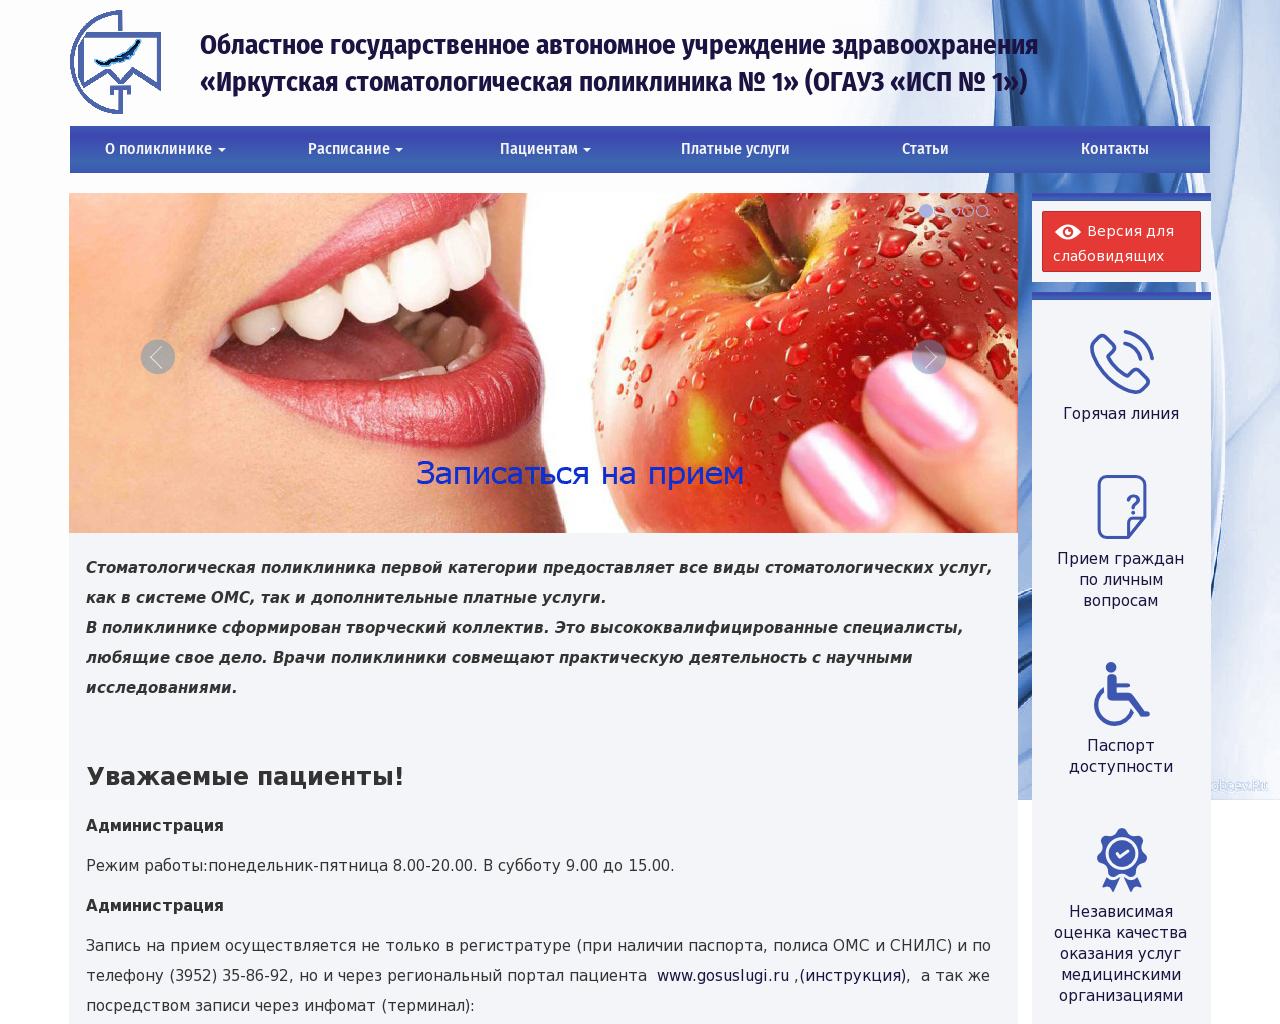 Изображение сайта stp-1.ru в разрешении 1280x1024